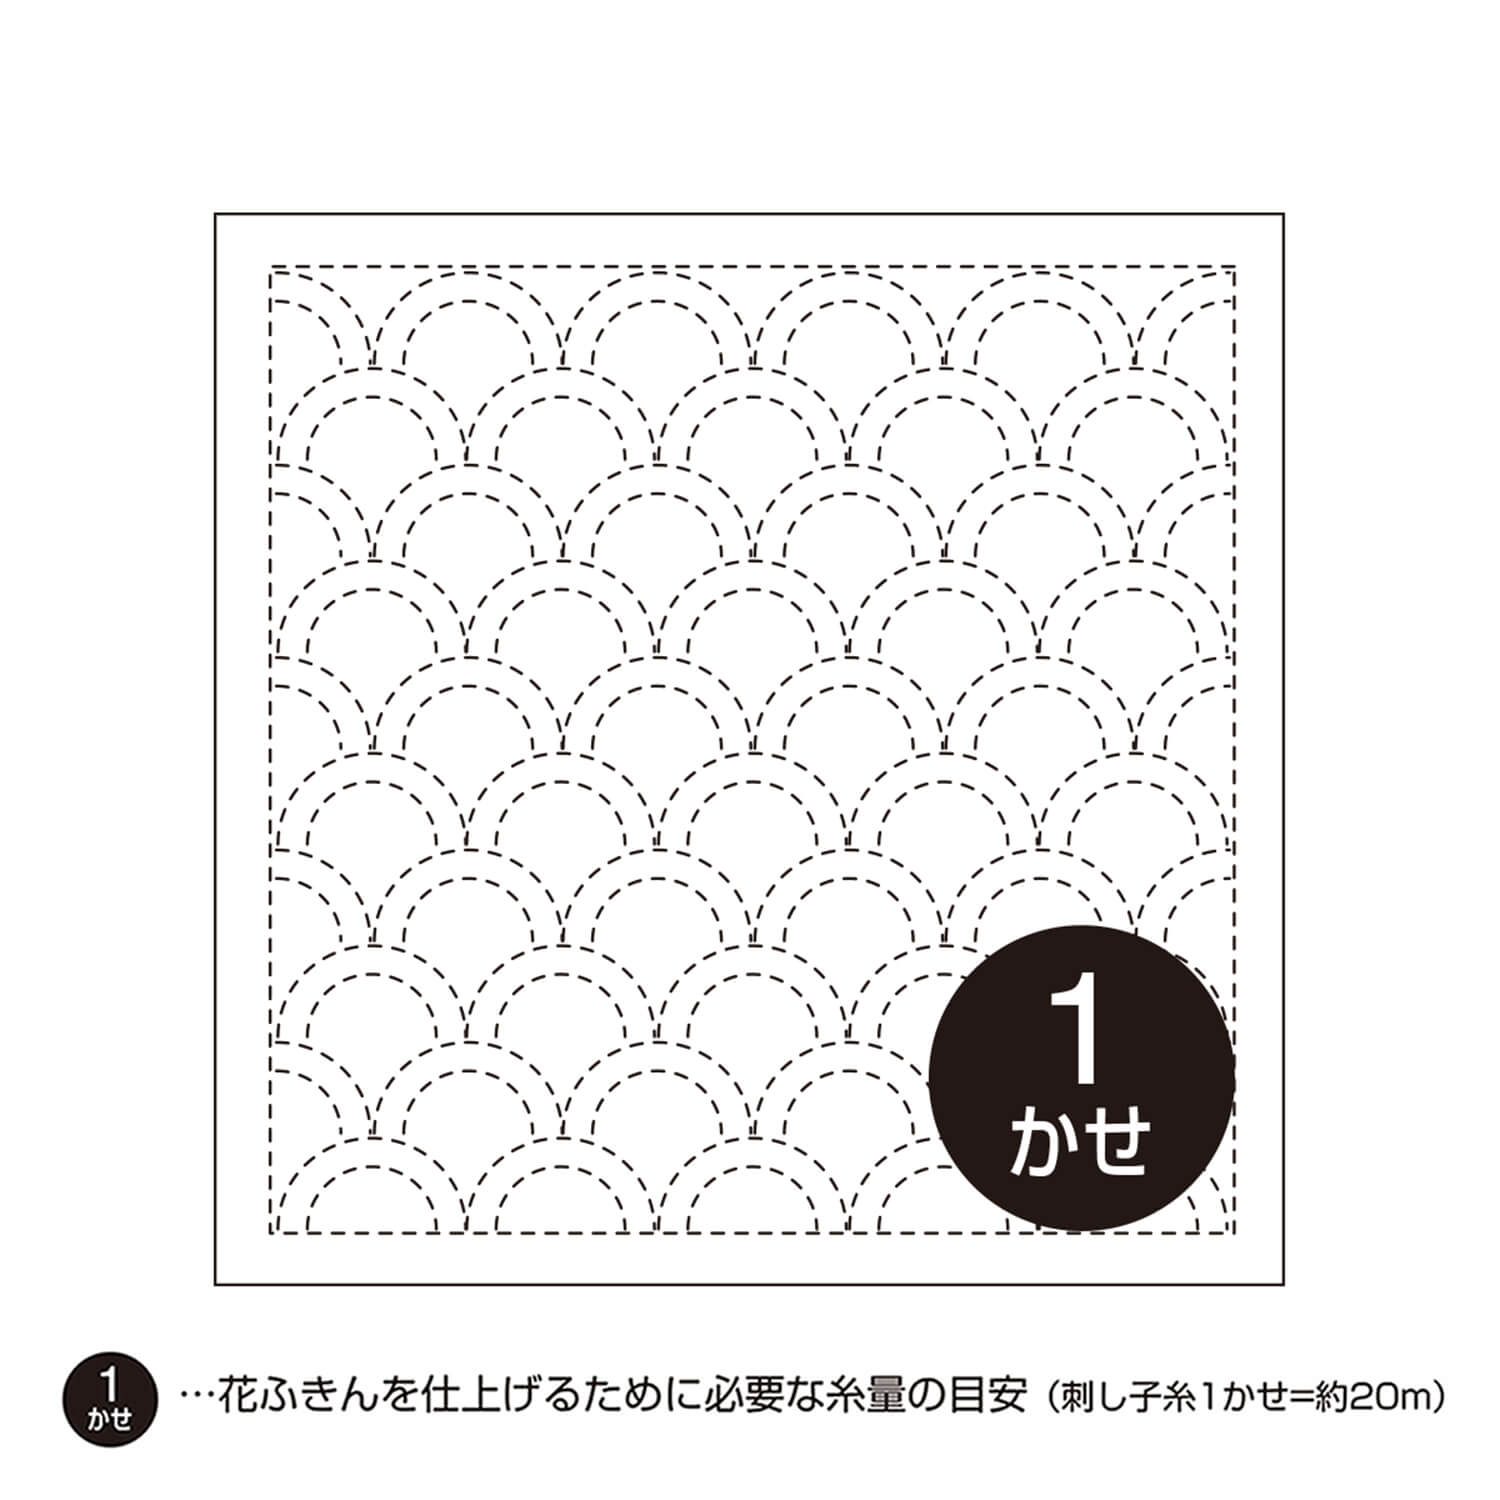 Hanafukin - Tyg med förtryckt mönster